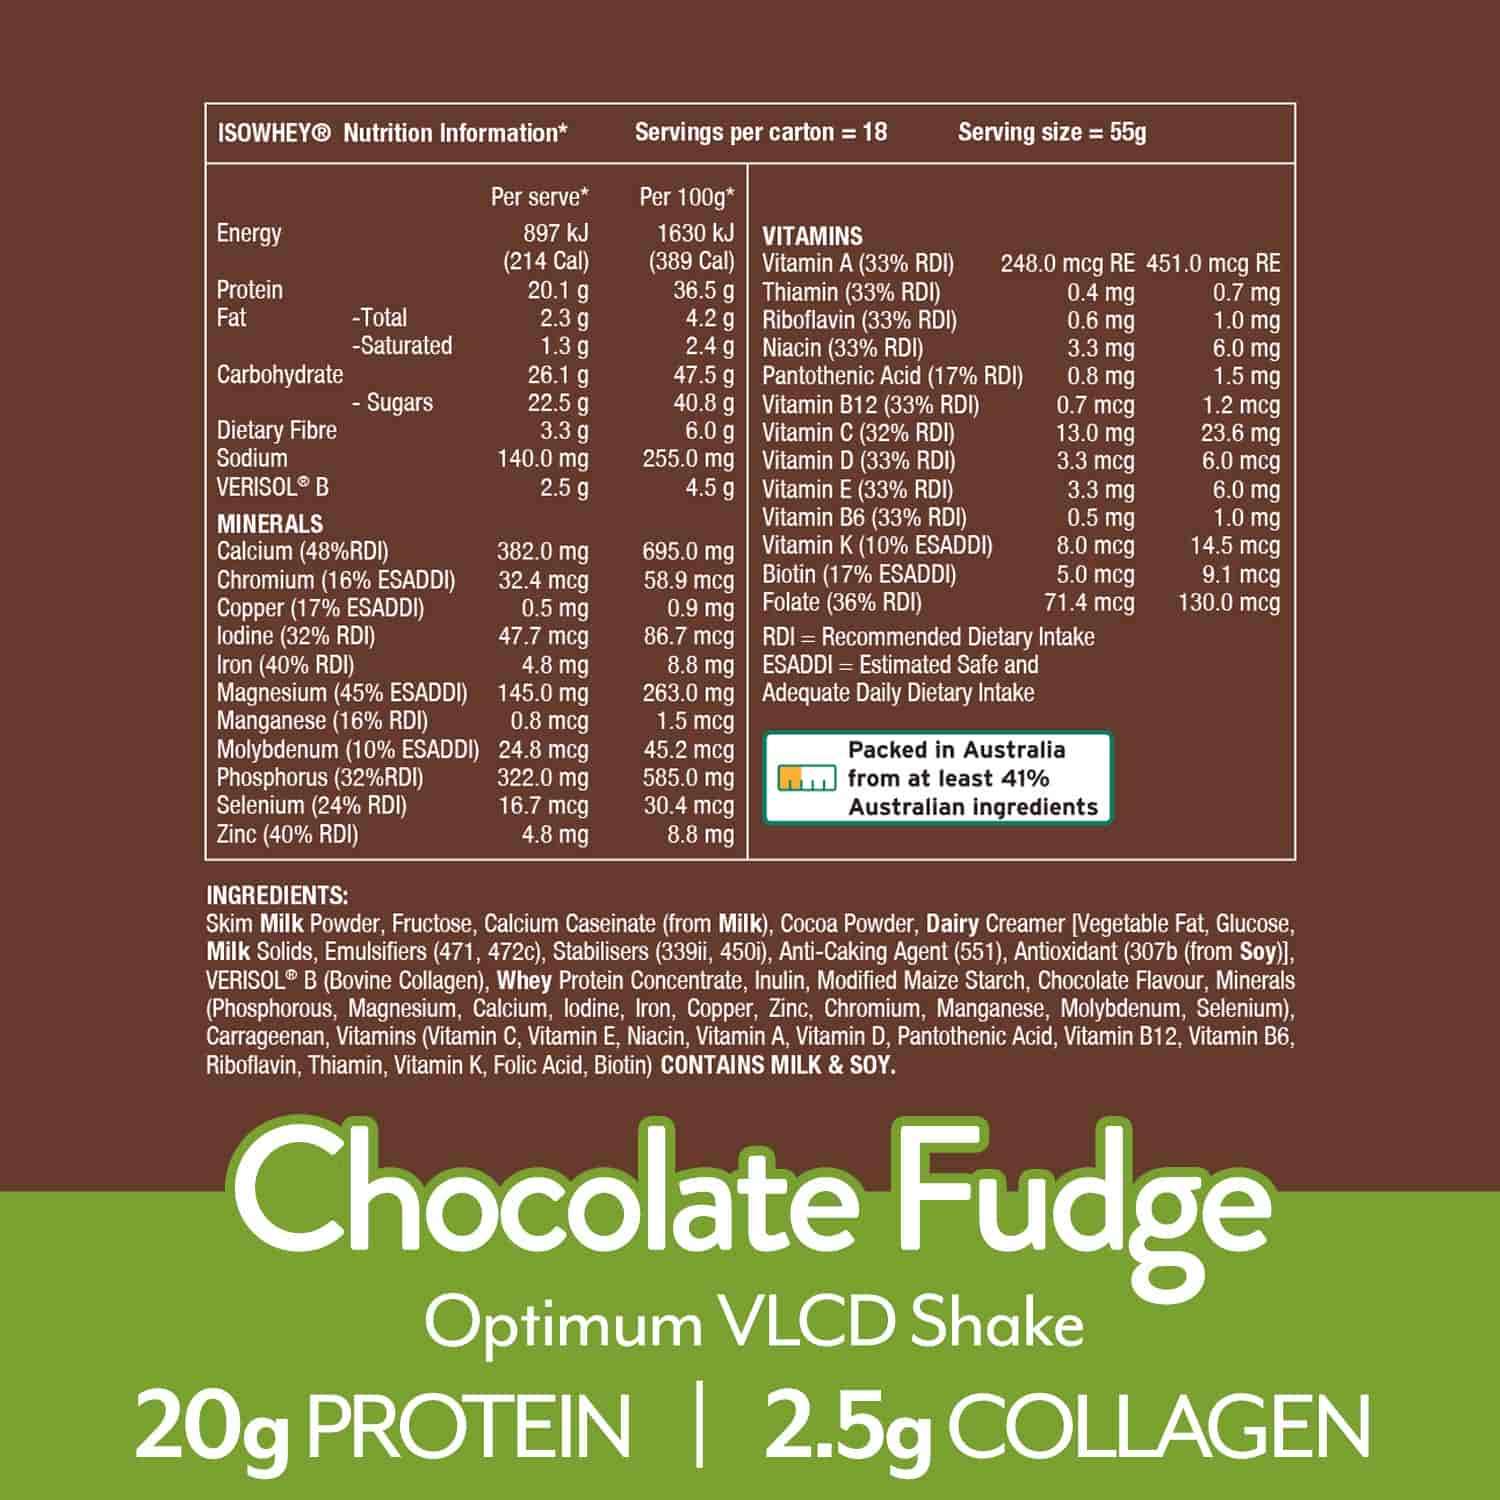 IsoWhey Optimum VLCD Shake Chocolate Fudge 18x55g nutritional information